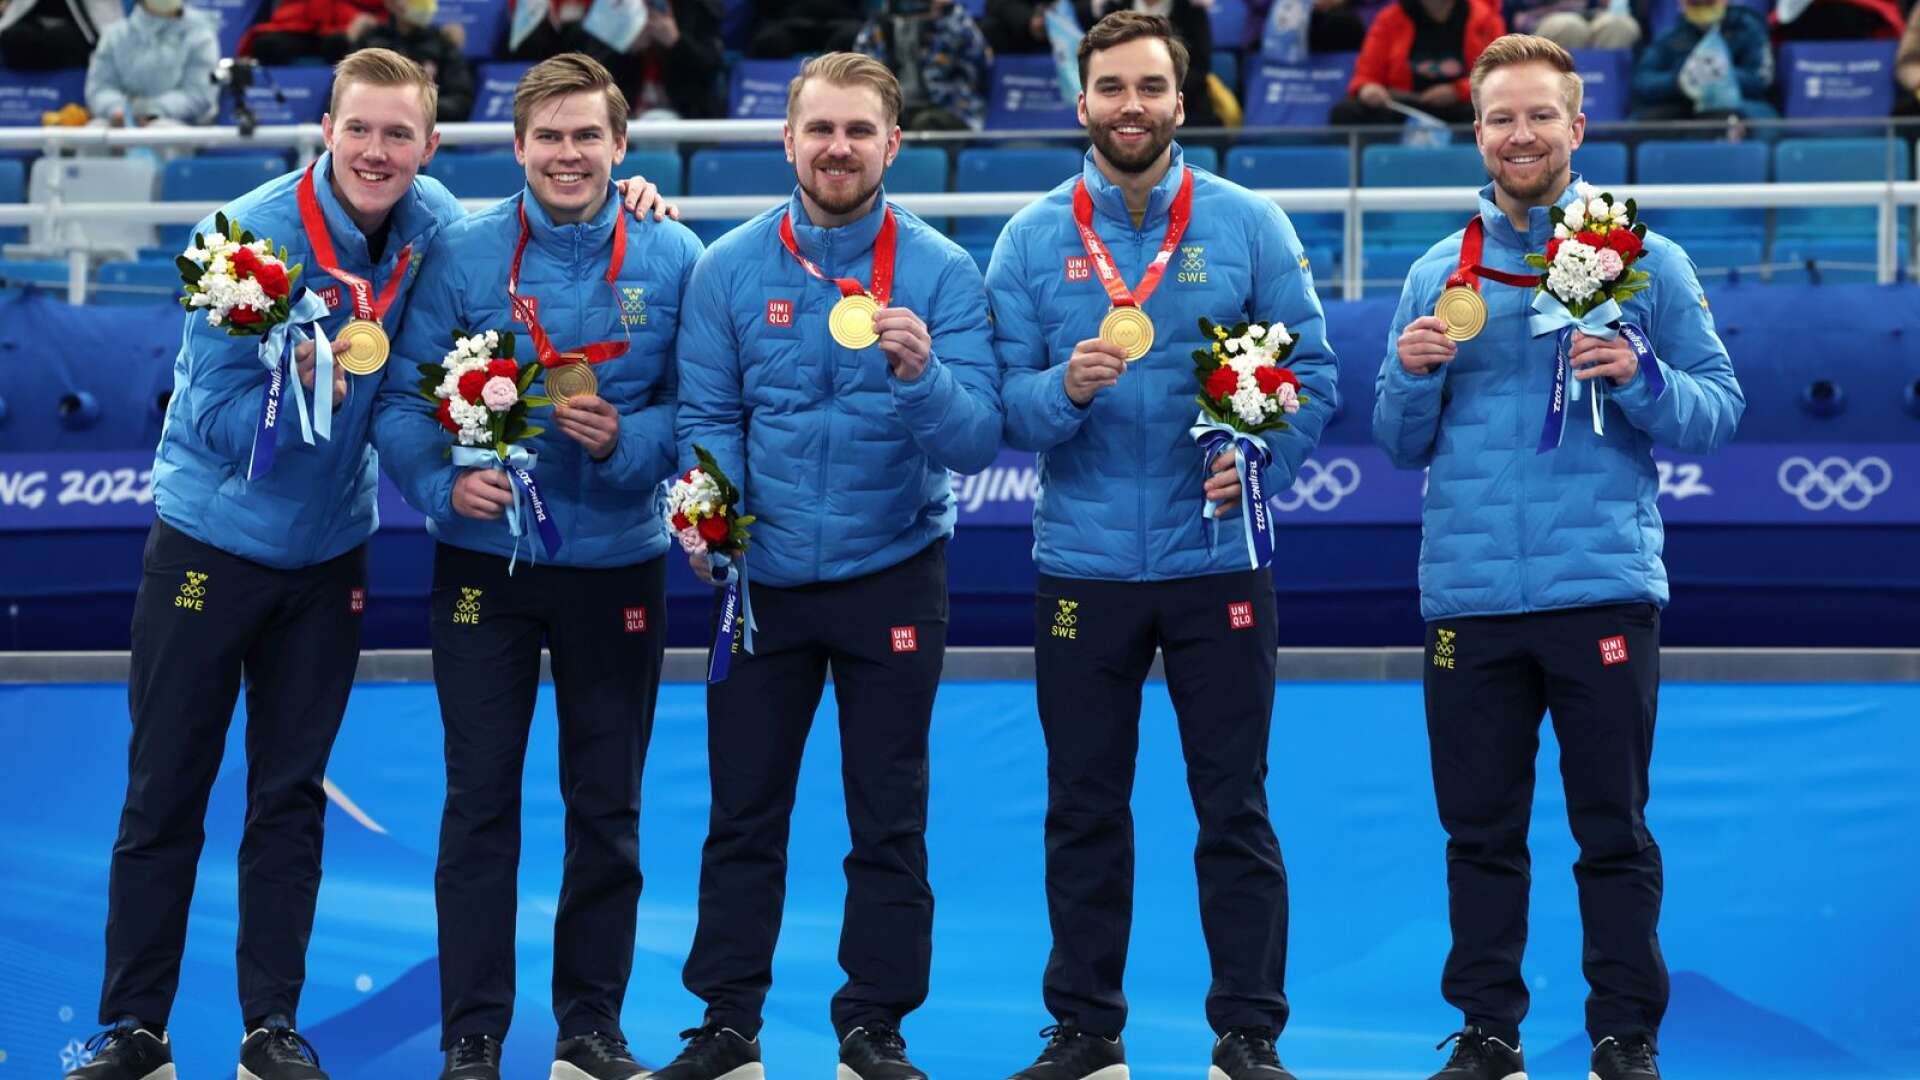 Sveriges guldlag i OS: Daniel Magnusson, Christoffer Sundgren, Rasmus Wranå, Oskar Eriksson och Niklas Edin. Nu har laget från Karlstad utsetts till bästa manliga lag totalt under spelen i Peking.